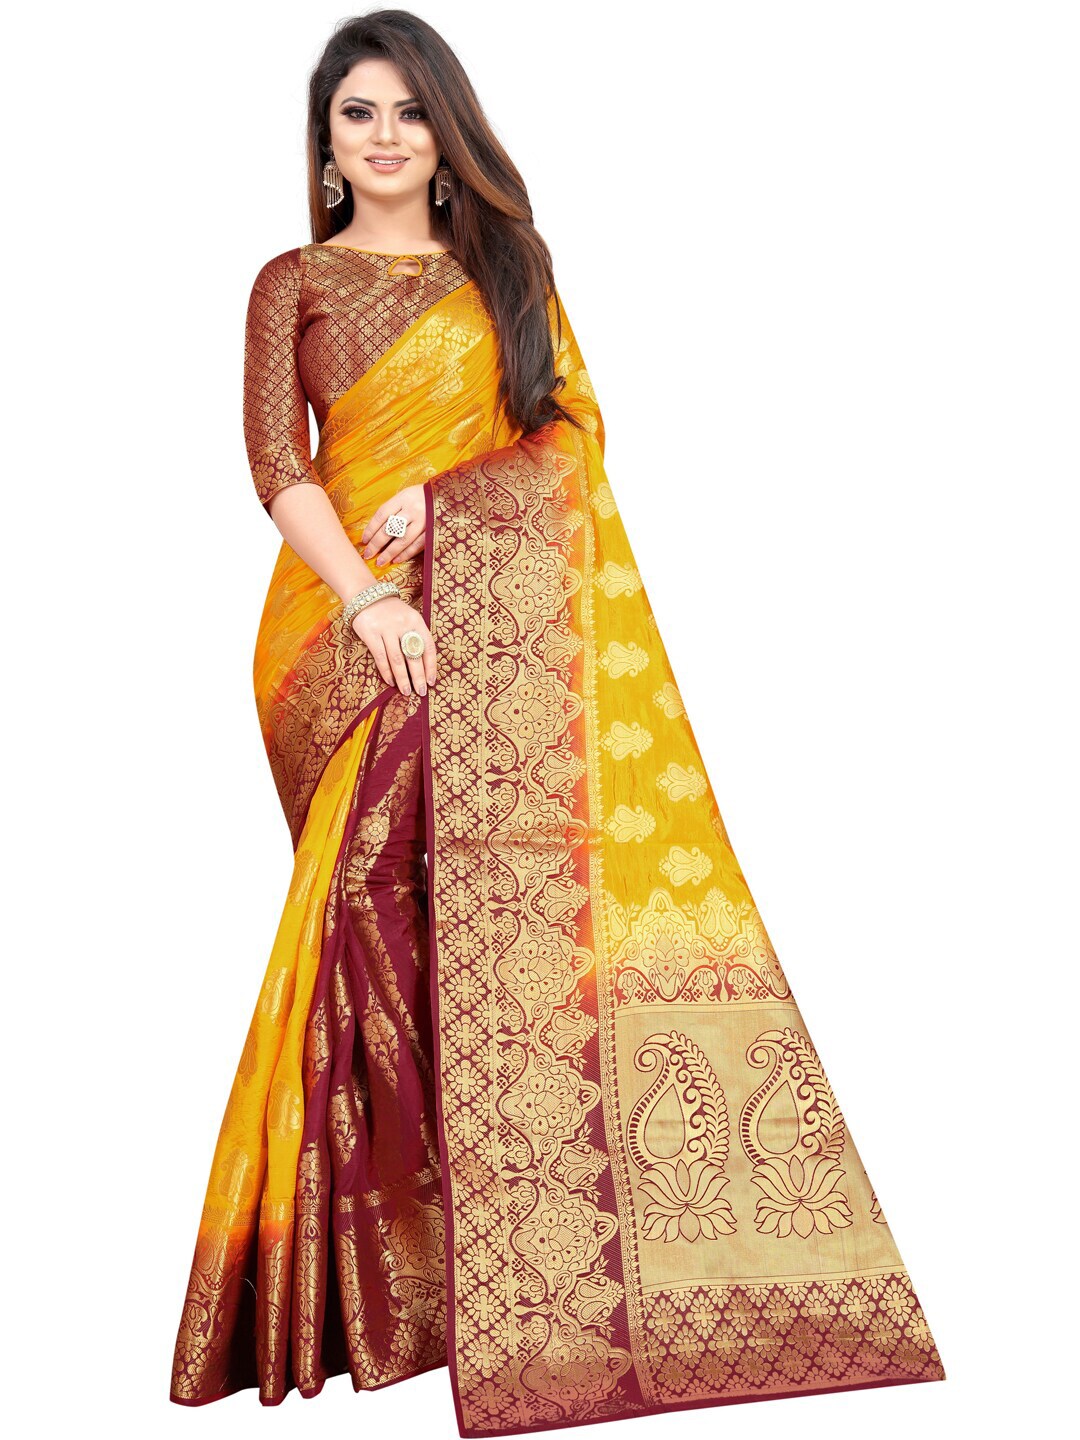 PERFECT WEAR Maroon & Yellow Woven Design Zari Silk Cotton Banarasi Saree Price in India